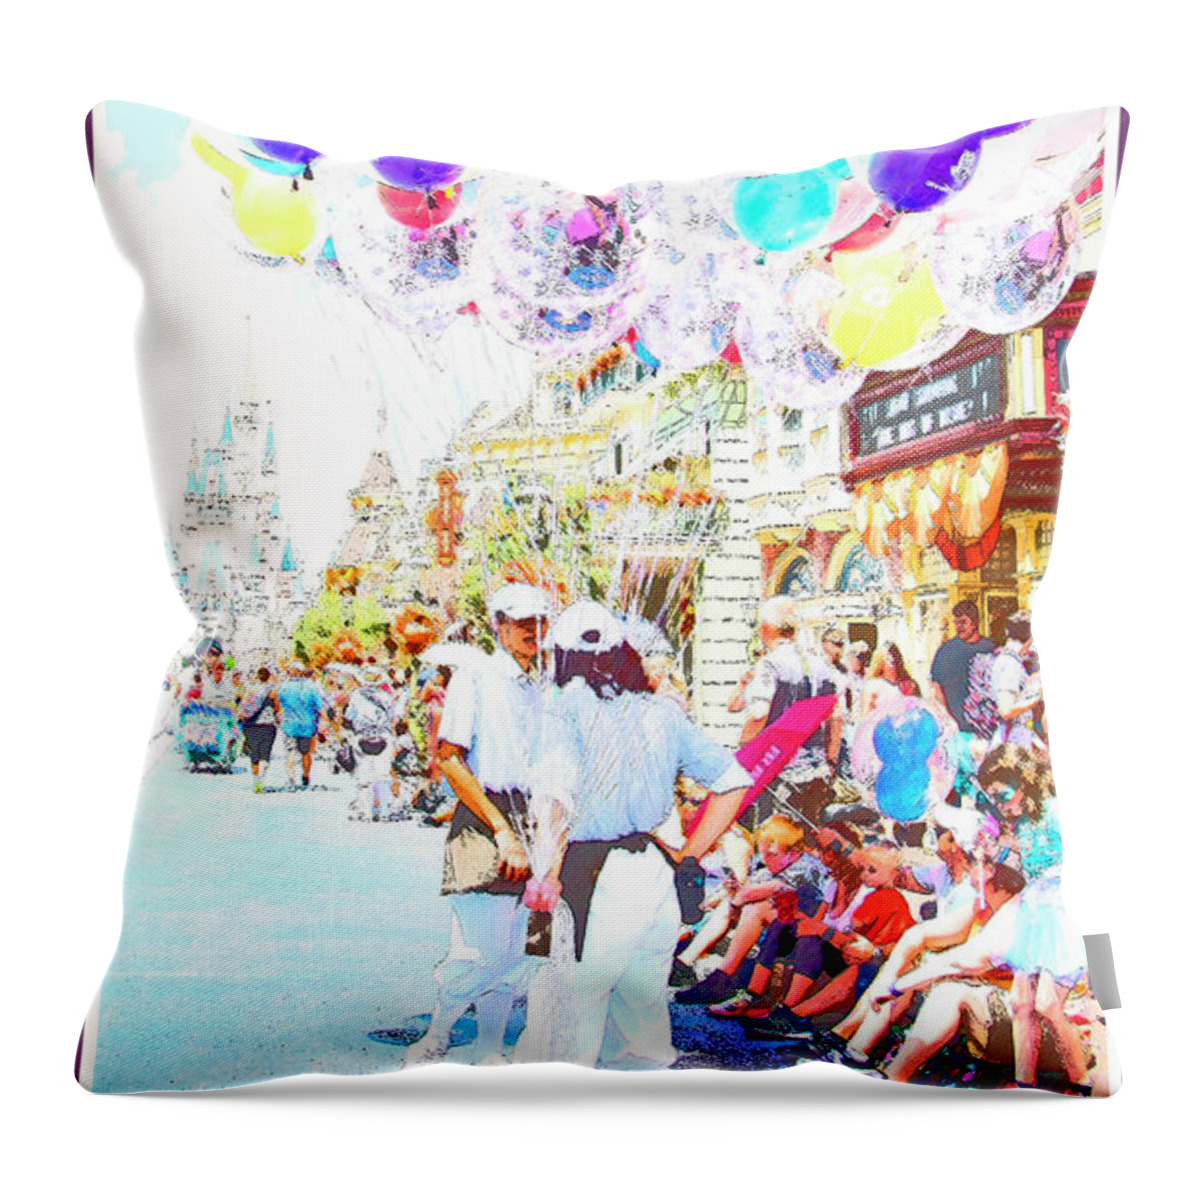 Main Street Usa Throw Pillow featuring the digital art Main Street USA, Walt Disney World #3 by A Macarthur Gurmankin